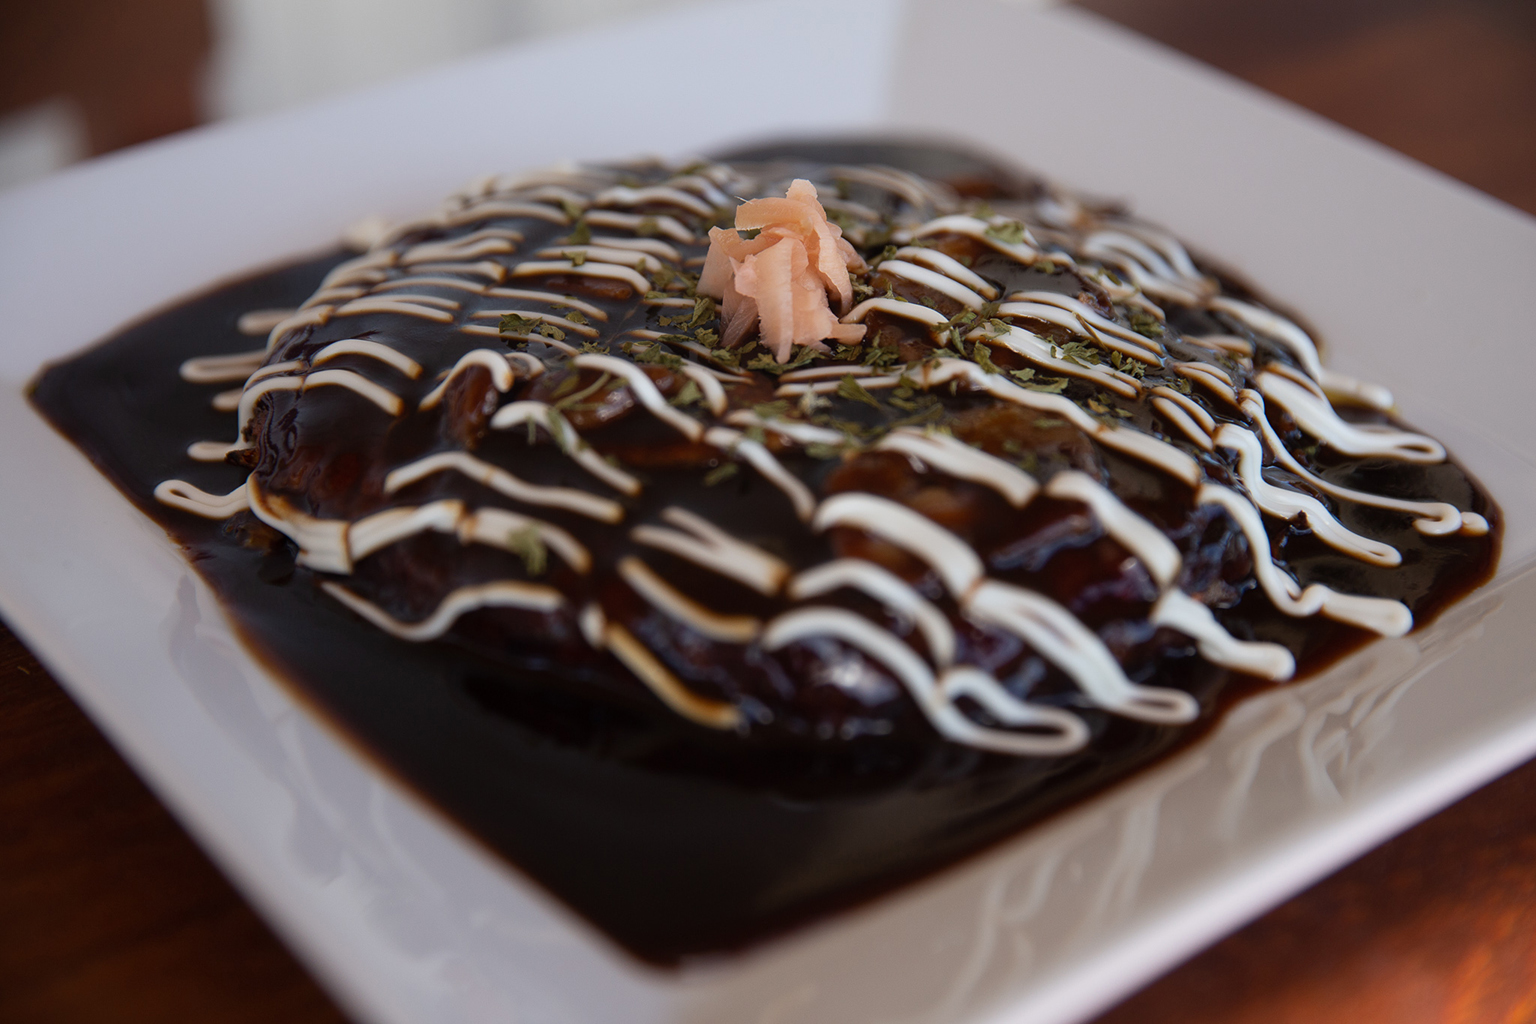 okinomiyaki